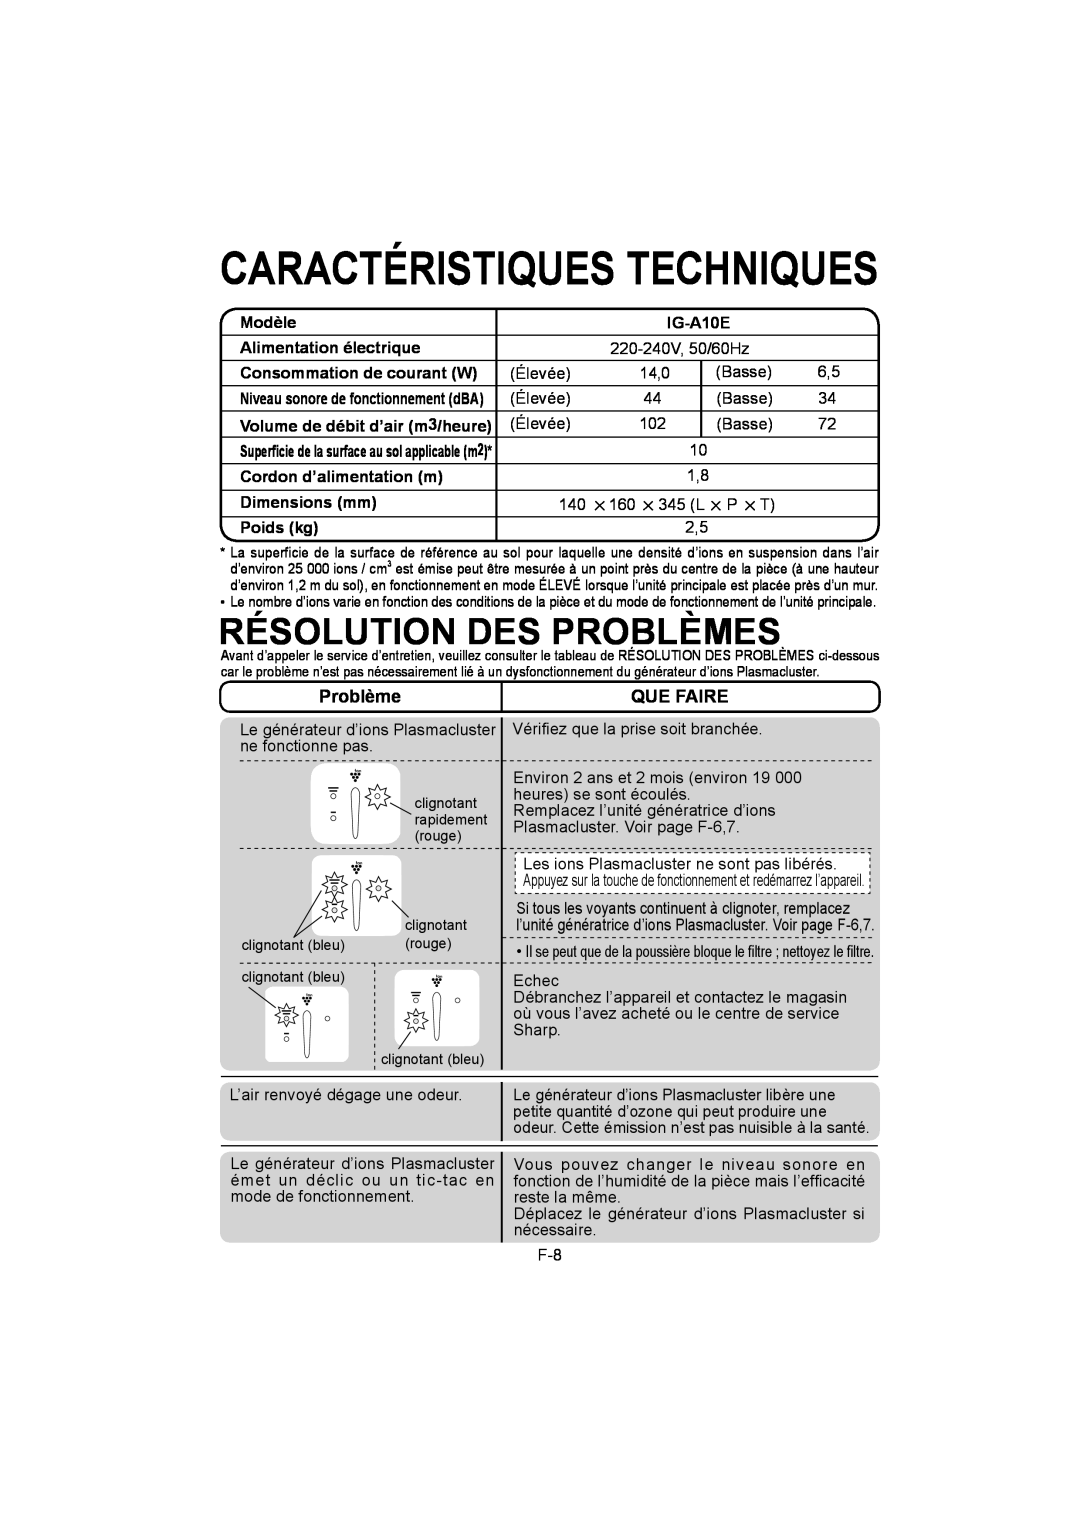 Sharp IG-A10E Caractéristiques Techniques, Résolution Des Problèmes, Que Faire, Modèle, Alimentation électrique, Poids kg 